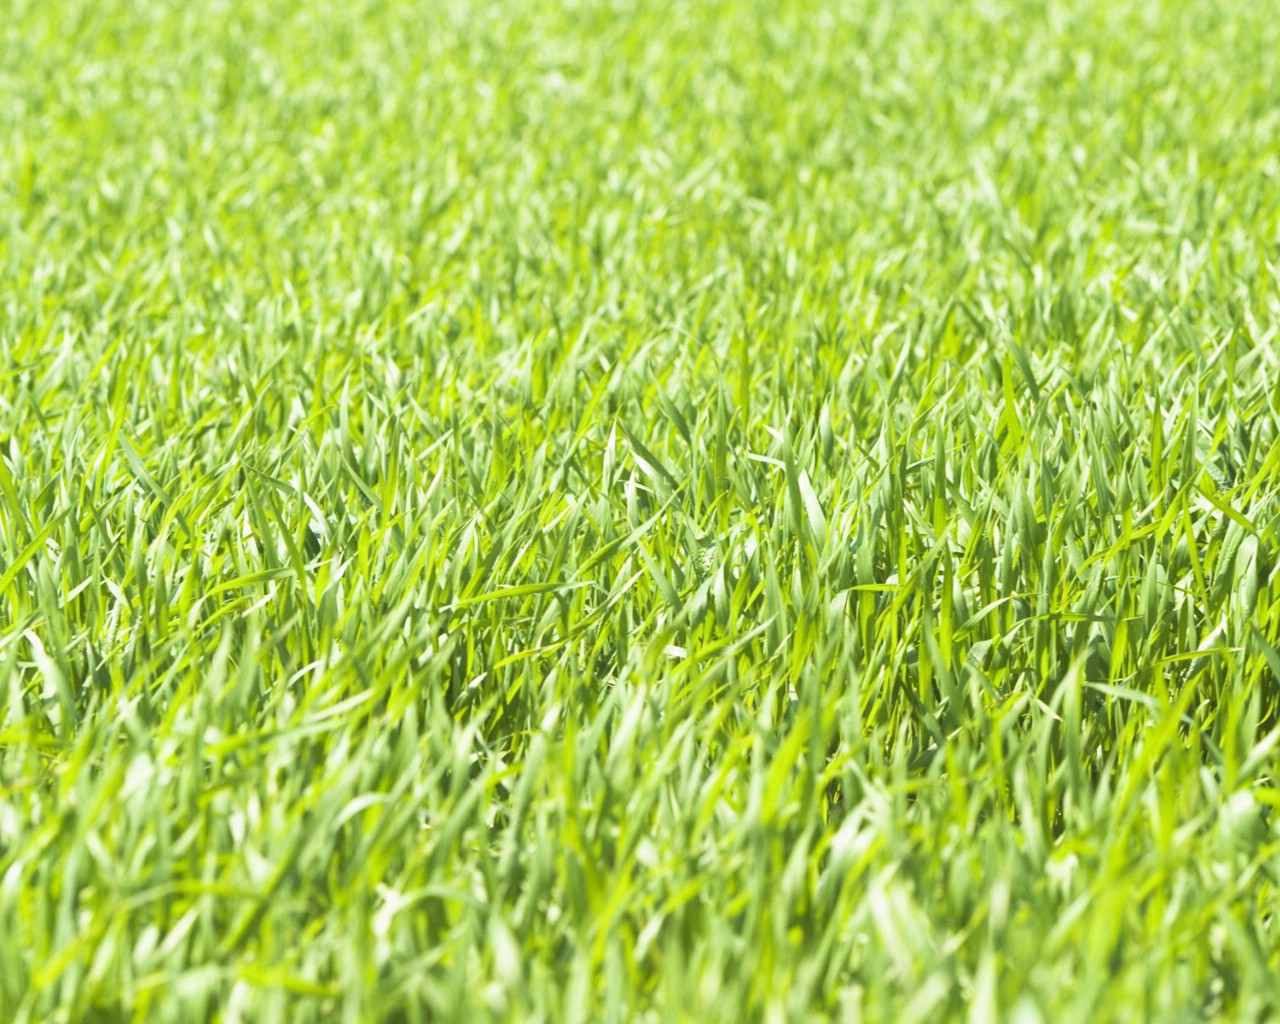 壁纸1280x1024绿色草地 4 18壁纸 绿色草地壁纸 绿色草地图片 绿色草地素材 花卉壁纸 花卉图库 花卉图片素材桌面壁纸